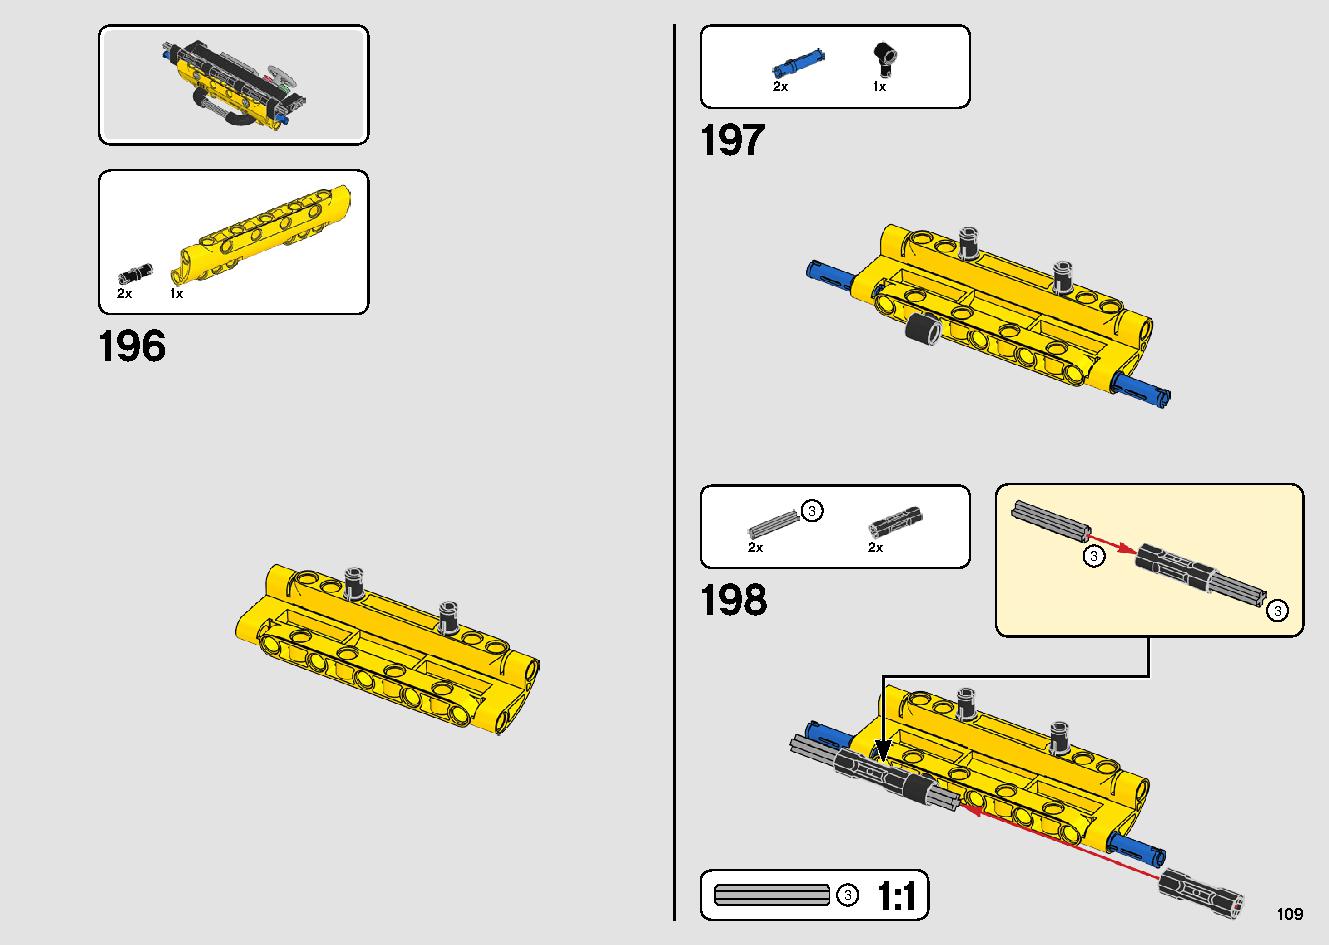 移動式クレーン車 42108 レゴの商品情報 レゴの説明書・組立方法 109 page